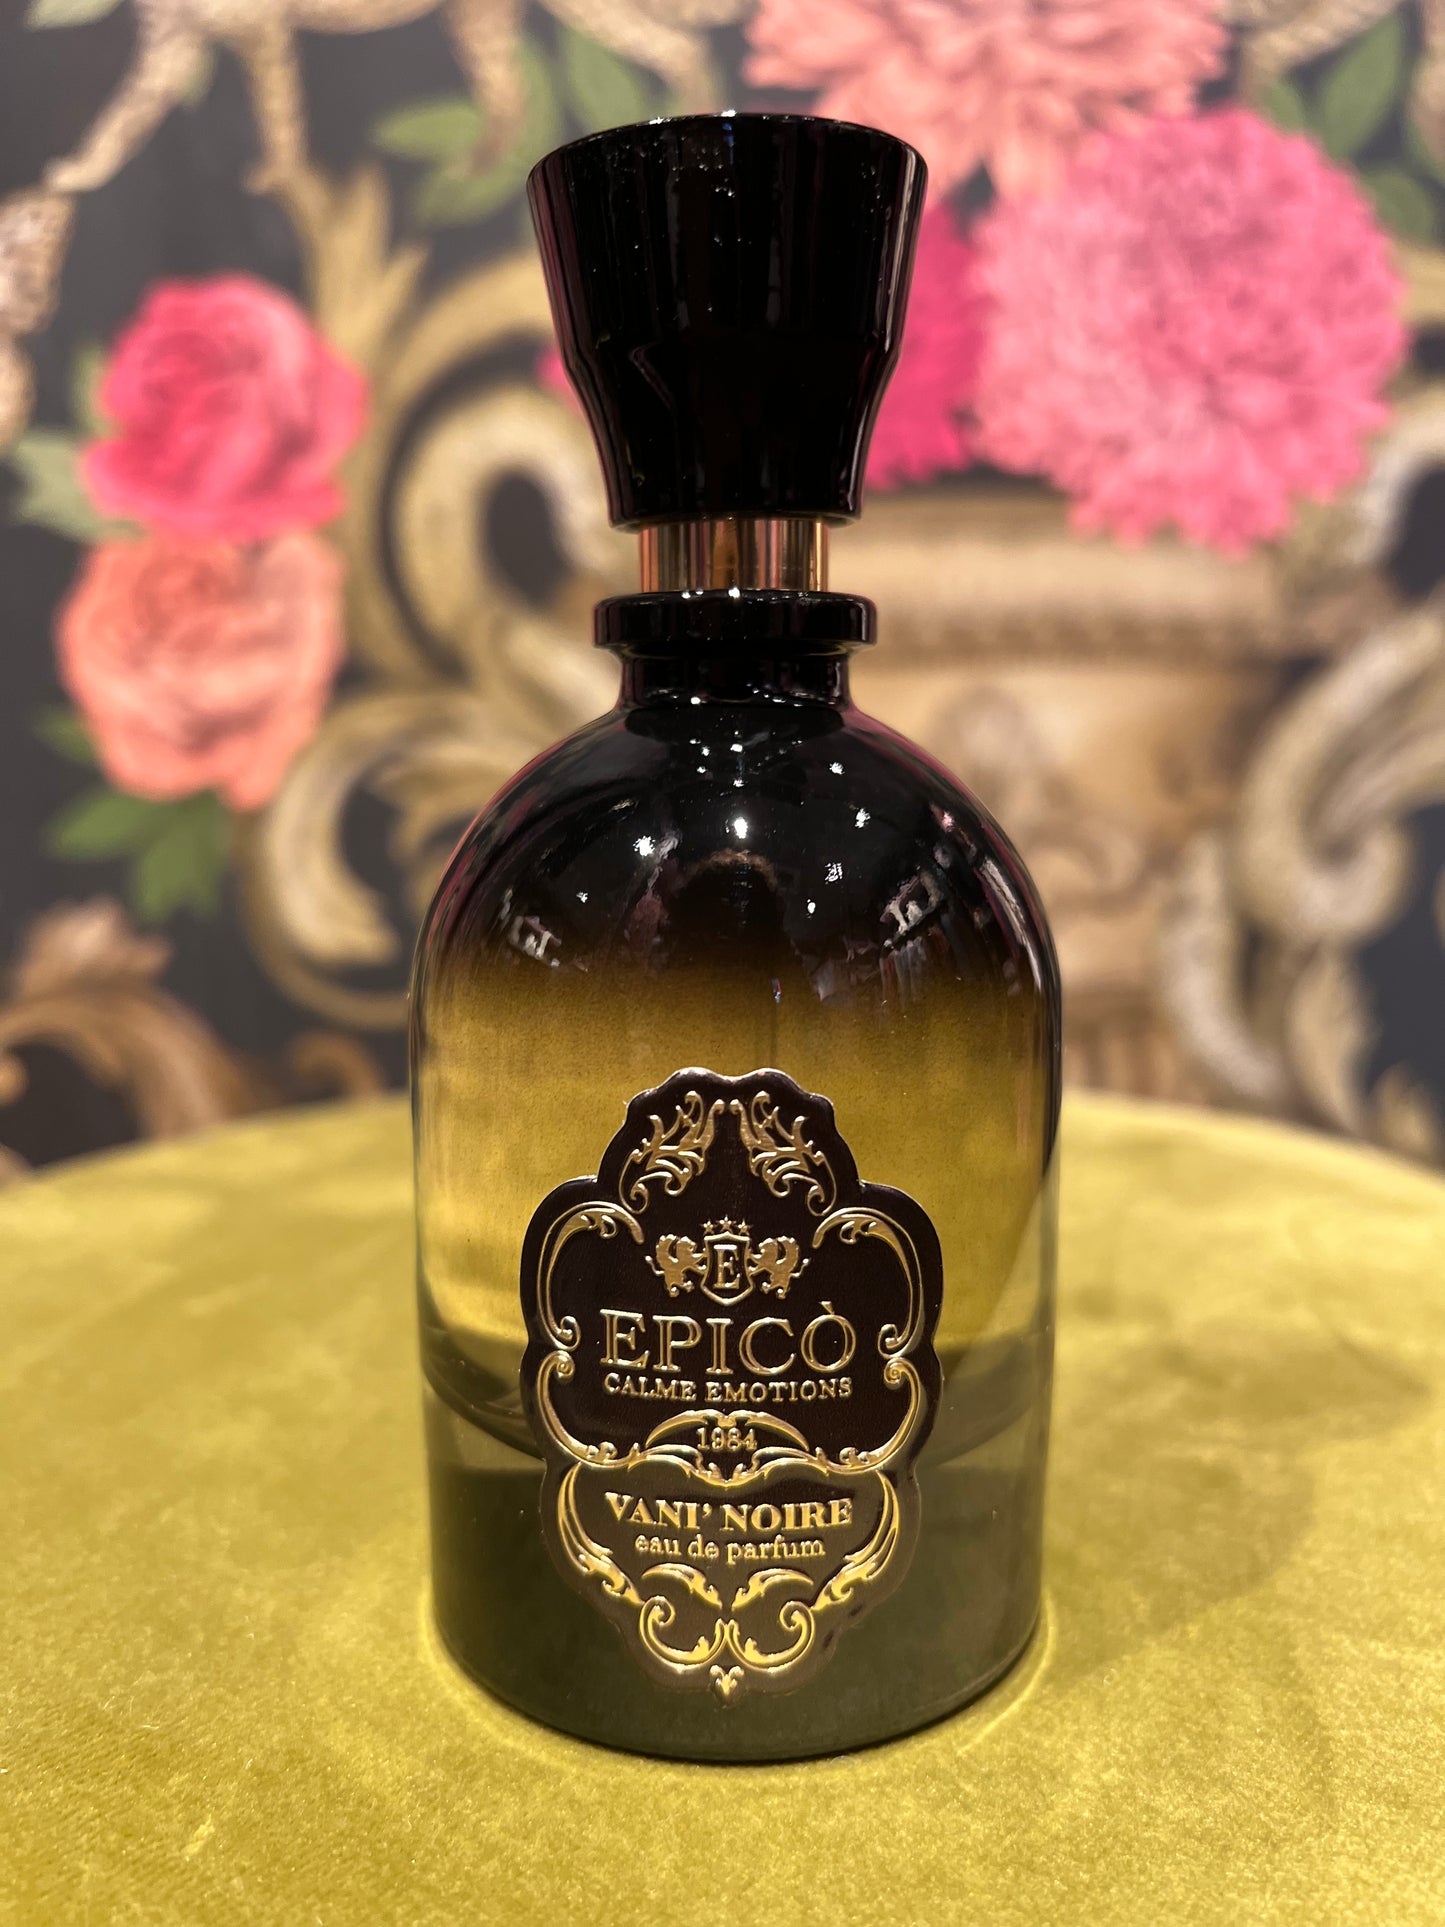 Epico vani’ noire eau de parfum